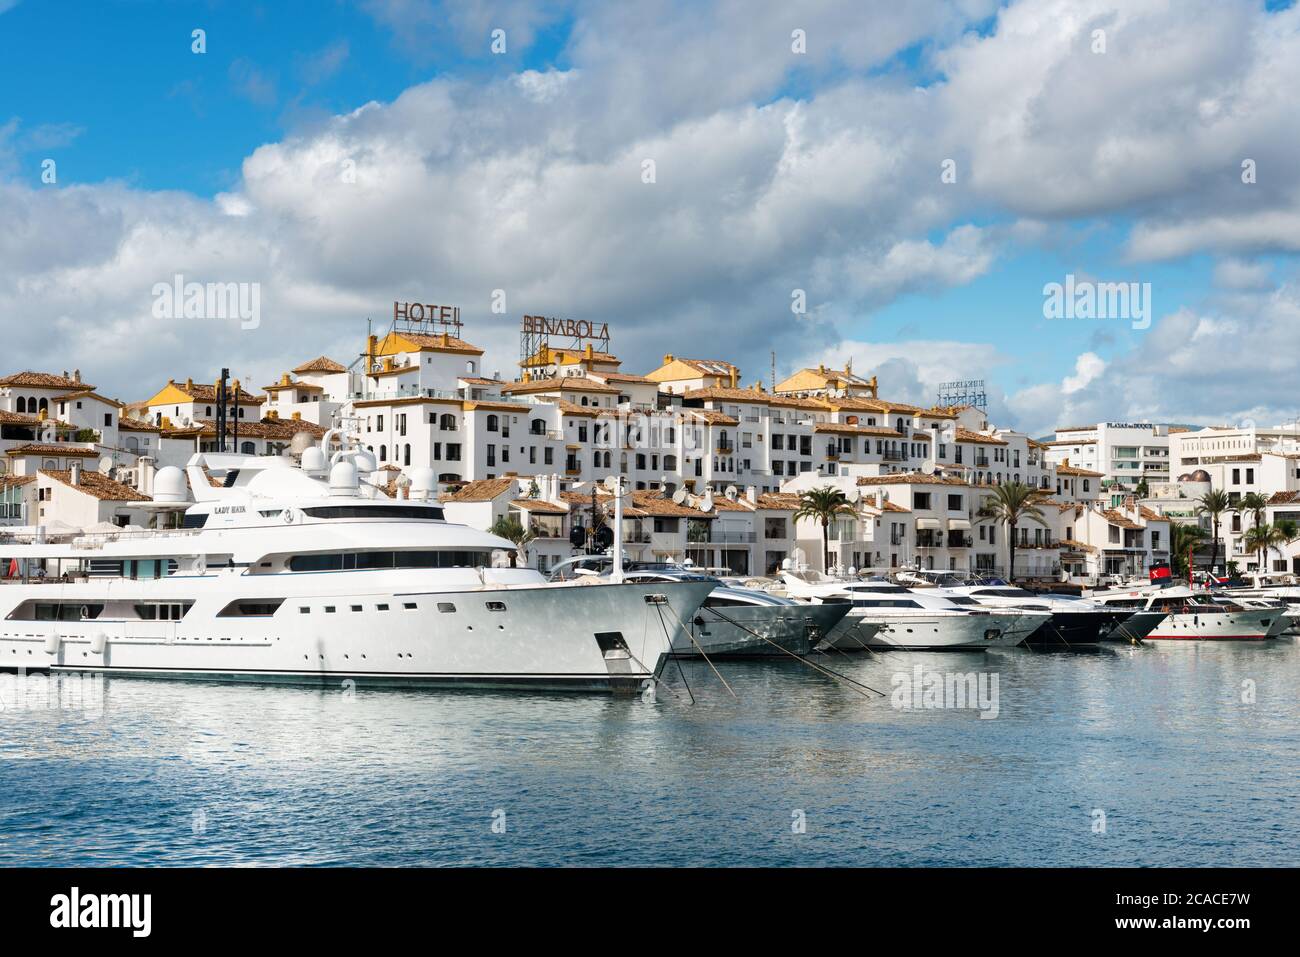 Marbella, España - 13 de octubre de 2016: Blanco yates de lujo caros  amarrados en el puerto deportivo de Puerto José Banús en la Costa del Sol  en una mañana nublada Fotografía